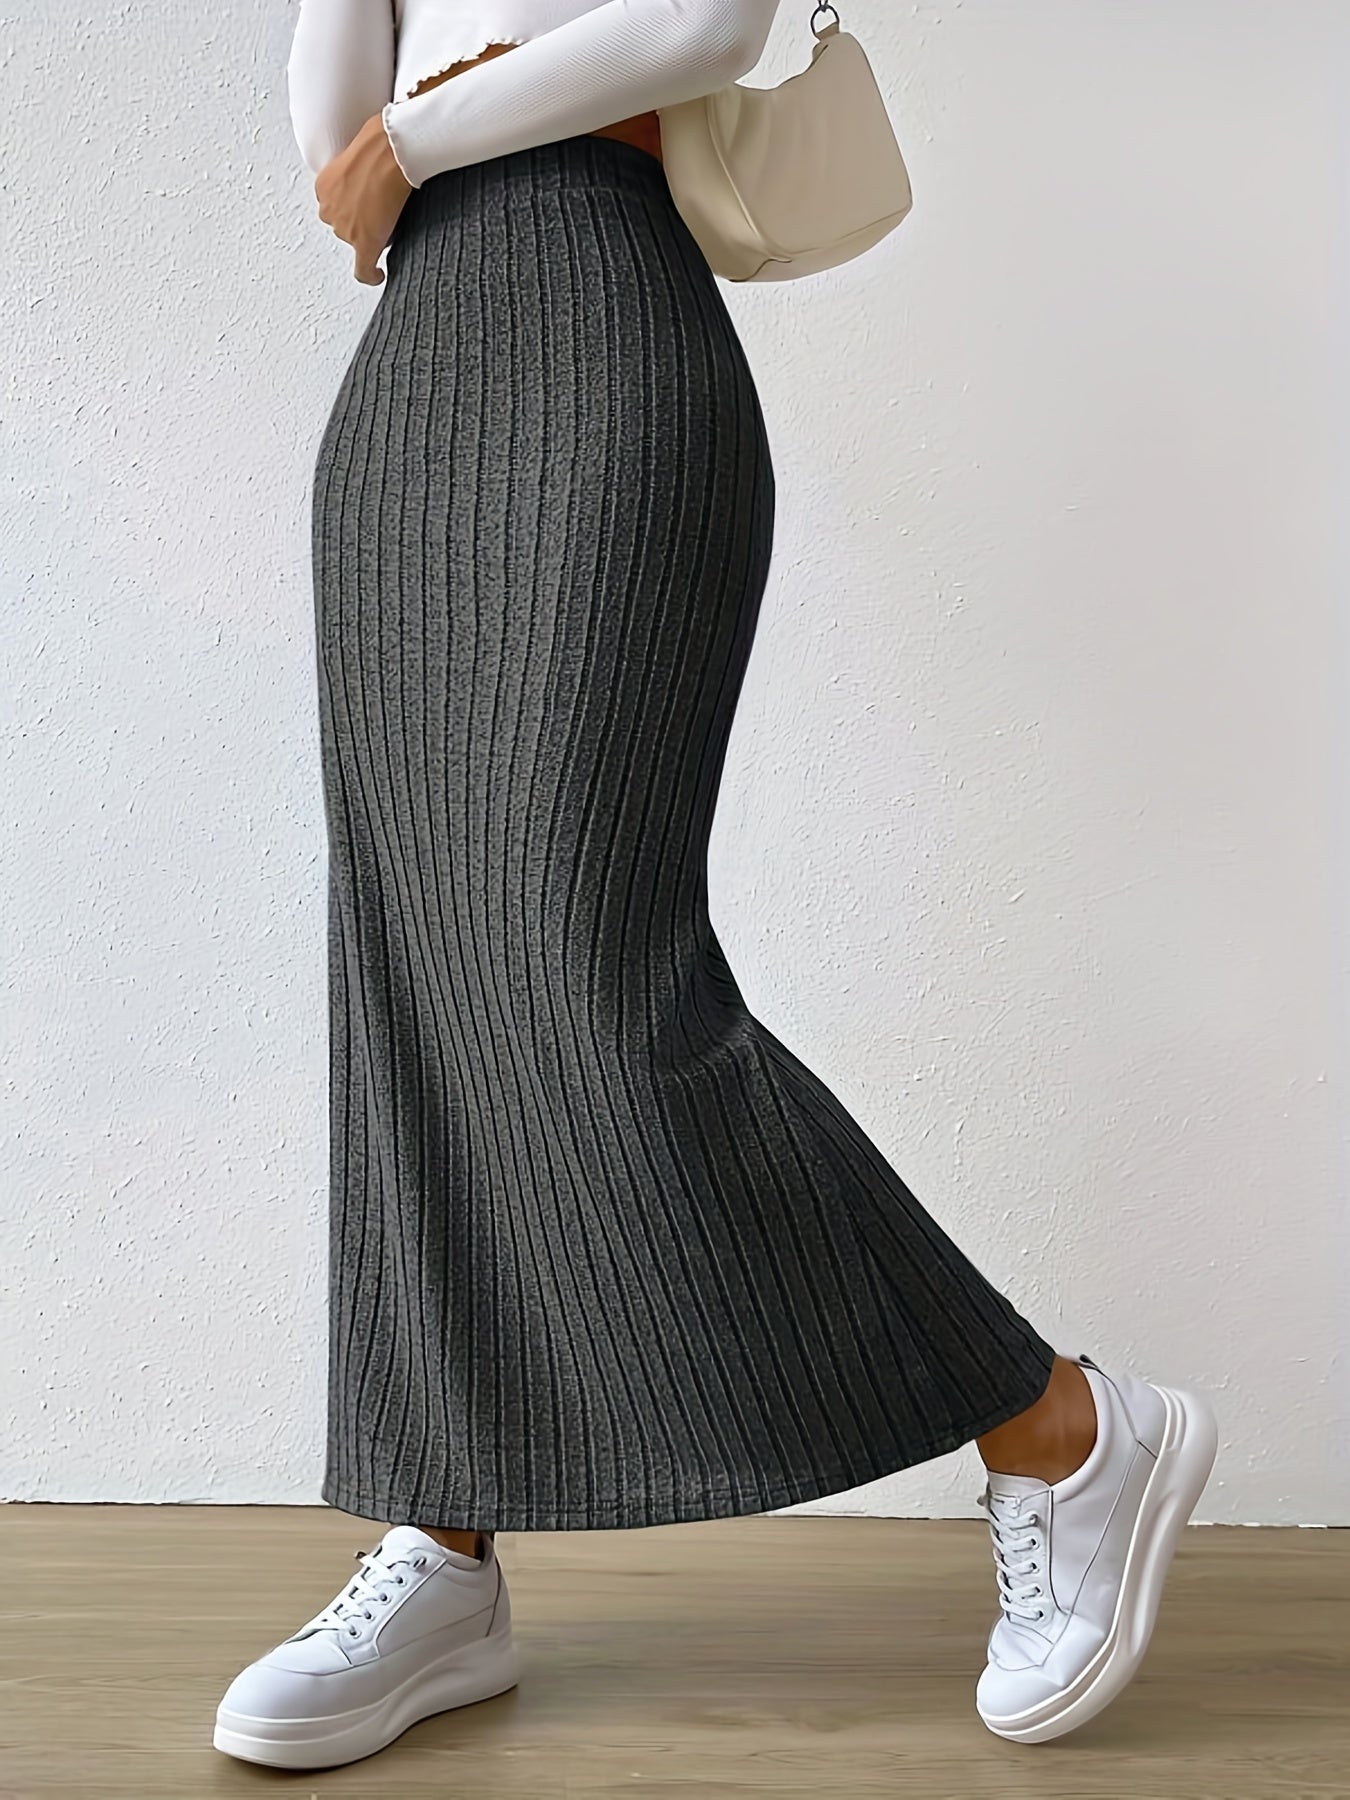 vlovelaw  Ribbed Slit Hem Skirt, Casual Ankle Length Skirt For Spring & Summer, Women's Clothing